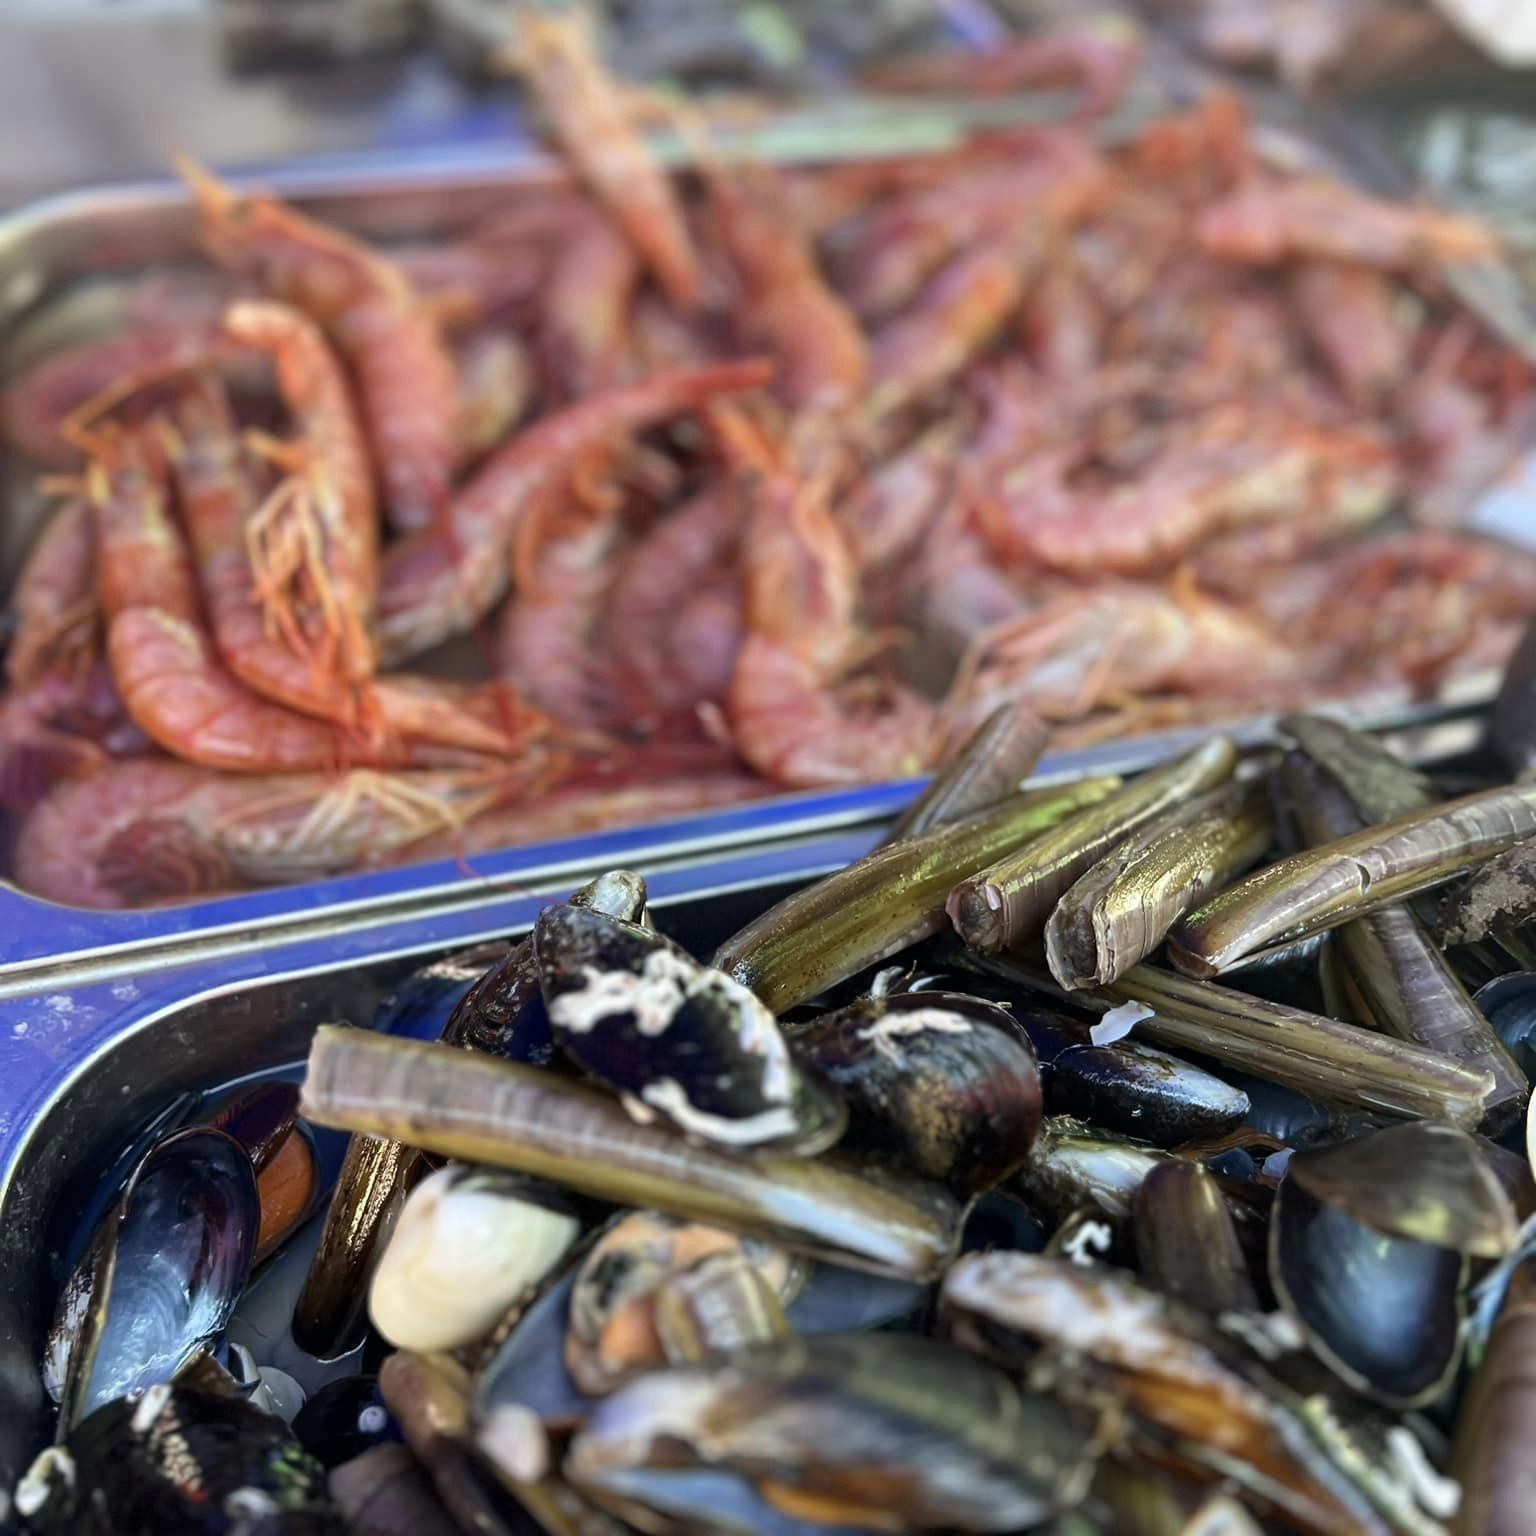 Marsaxlokk Fishing Village seafood market